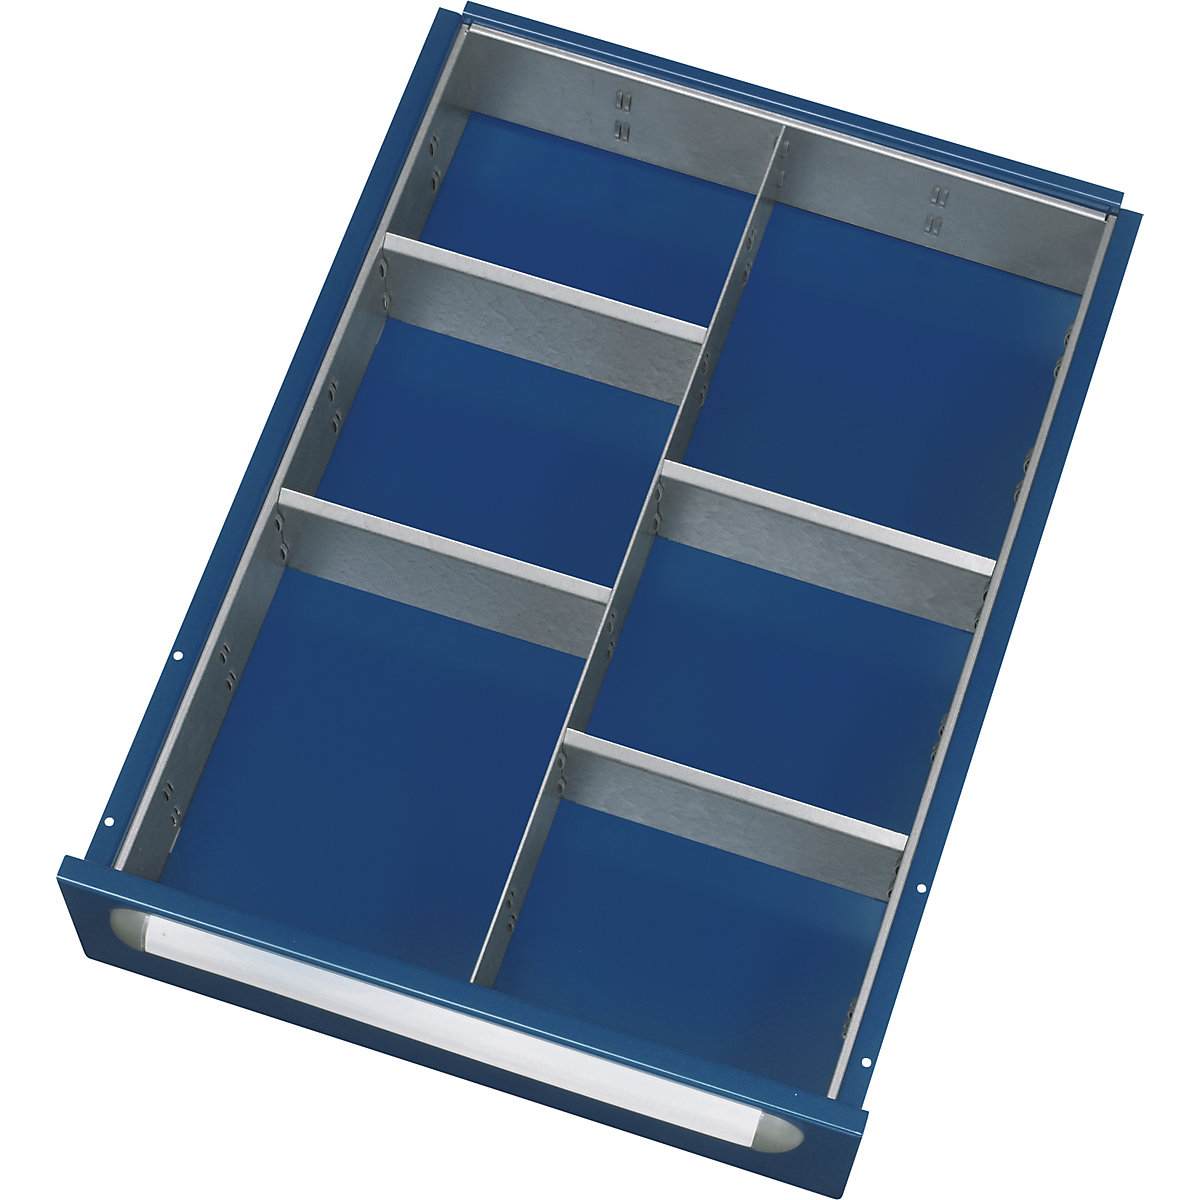 Kit de compartimentation pour tiroirs - RAU